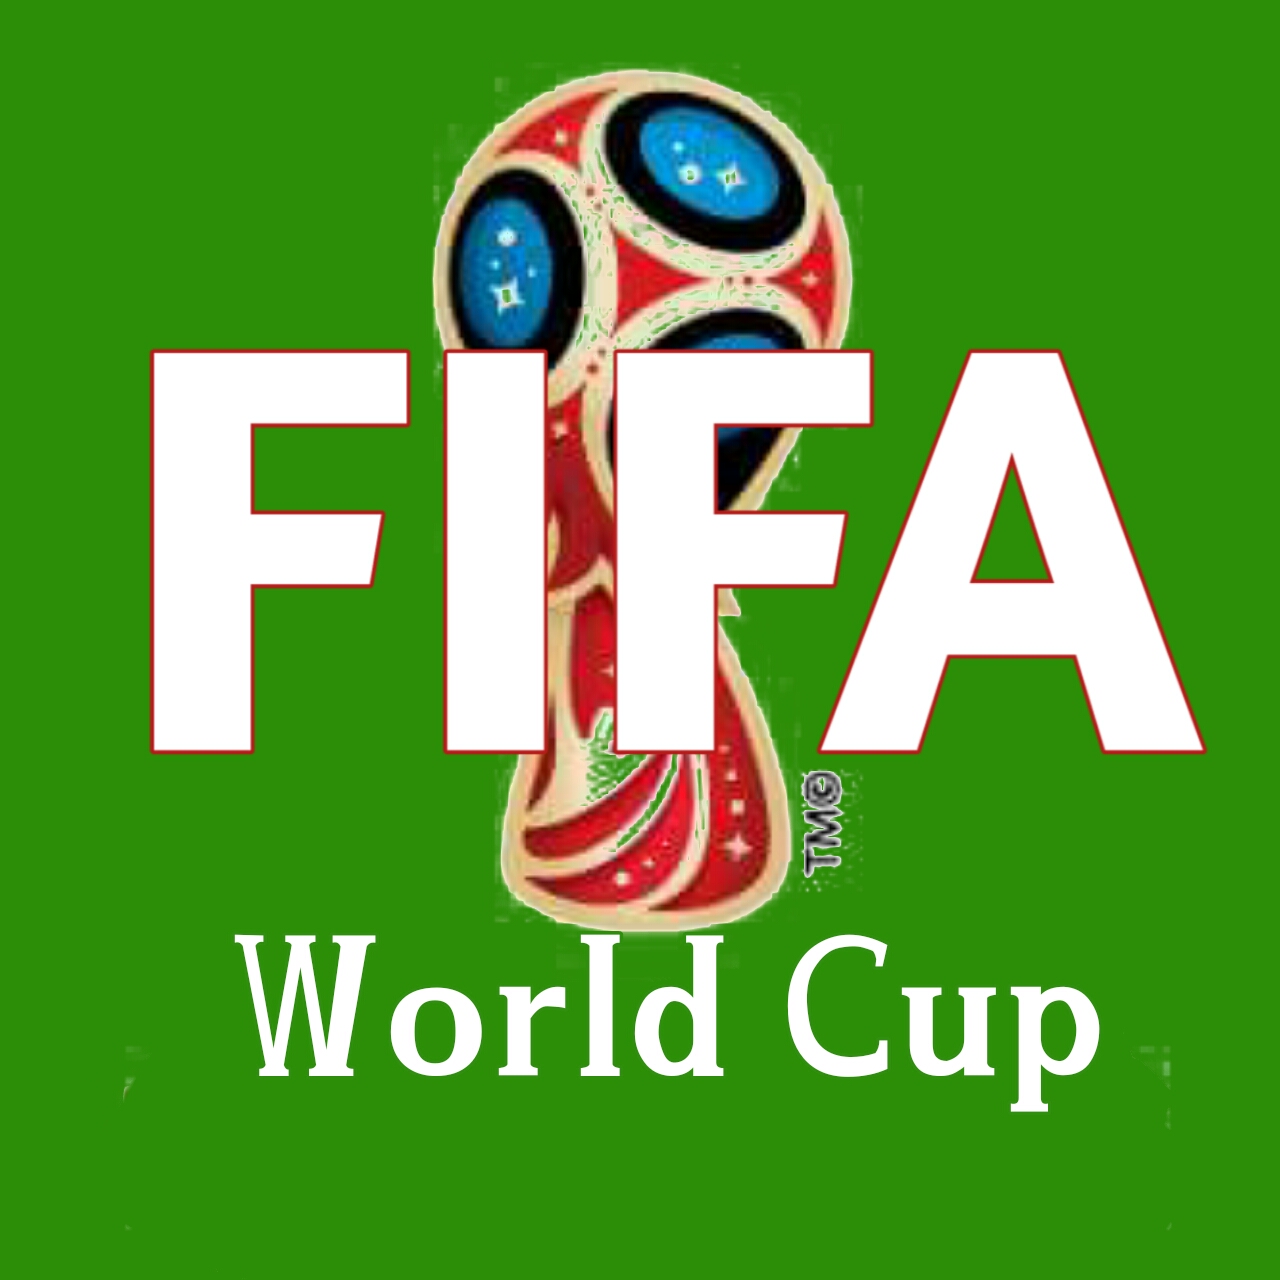 [FIFA WORLD CUP] এর ইতিহাস একনজরে দেখে নেওয়া যাক। কে কত বার চ্যাম্পিয়ন, এবং Cup নিয়েছে বিস্তারিত সব।